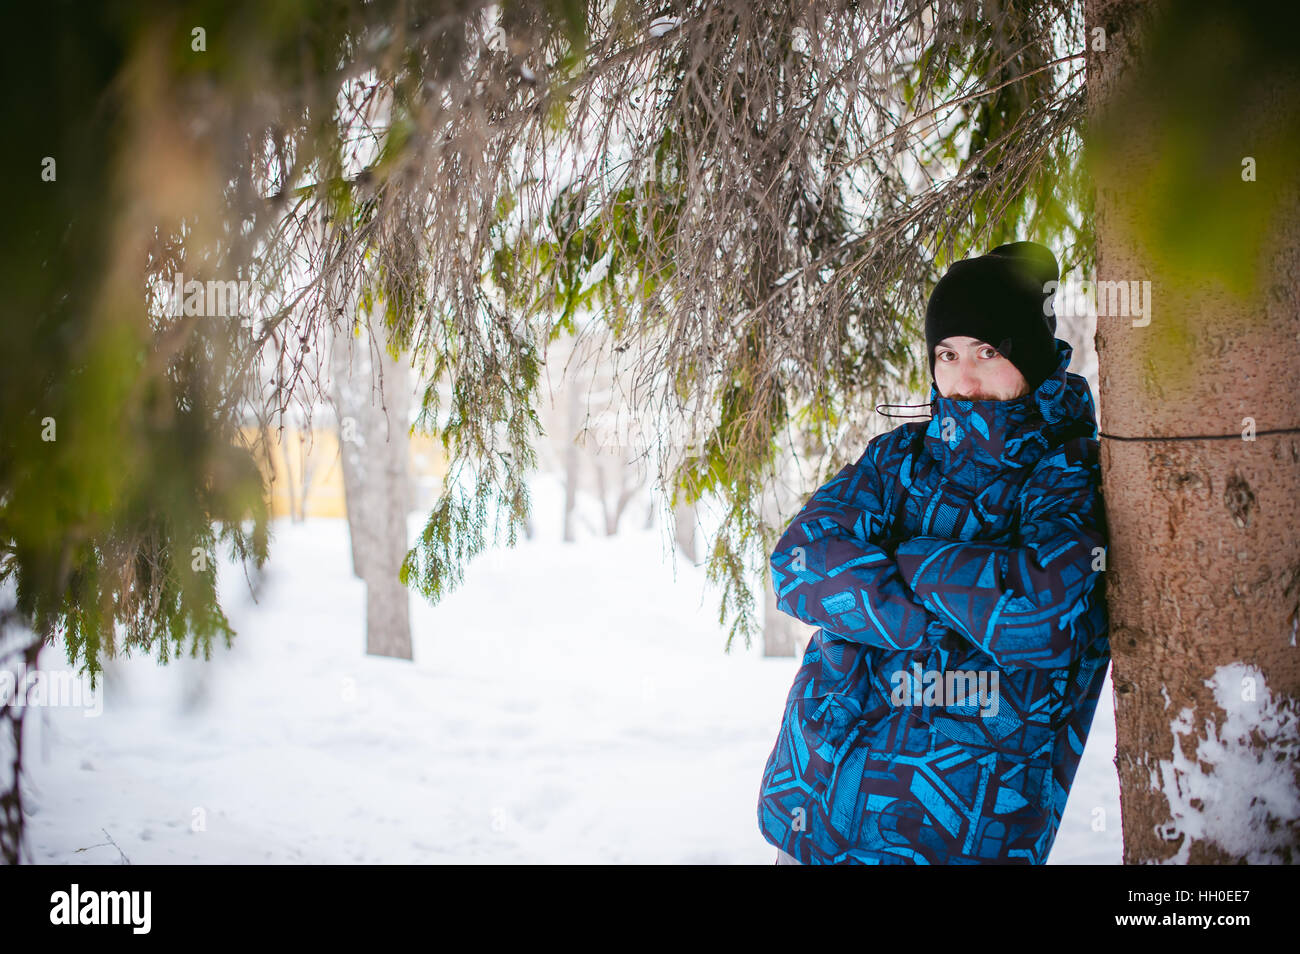 Los hombres caminan en Winter Park. chico con buen humor y sonrisa, ropa de abrigo, paseos al aire libre Foto de stock